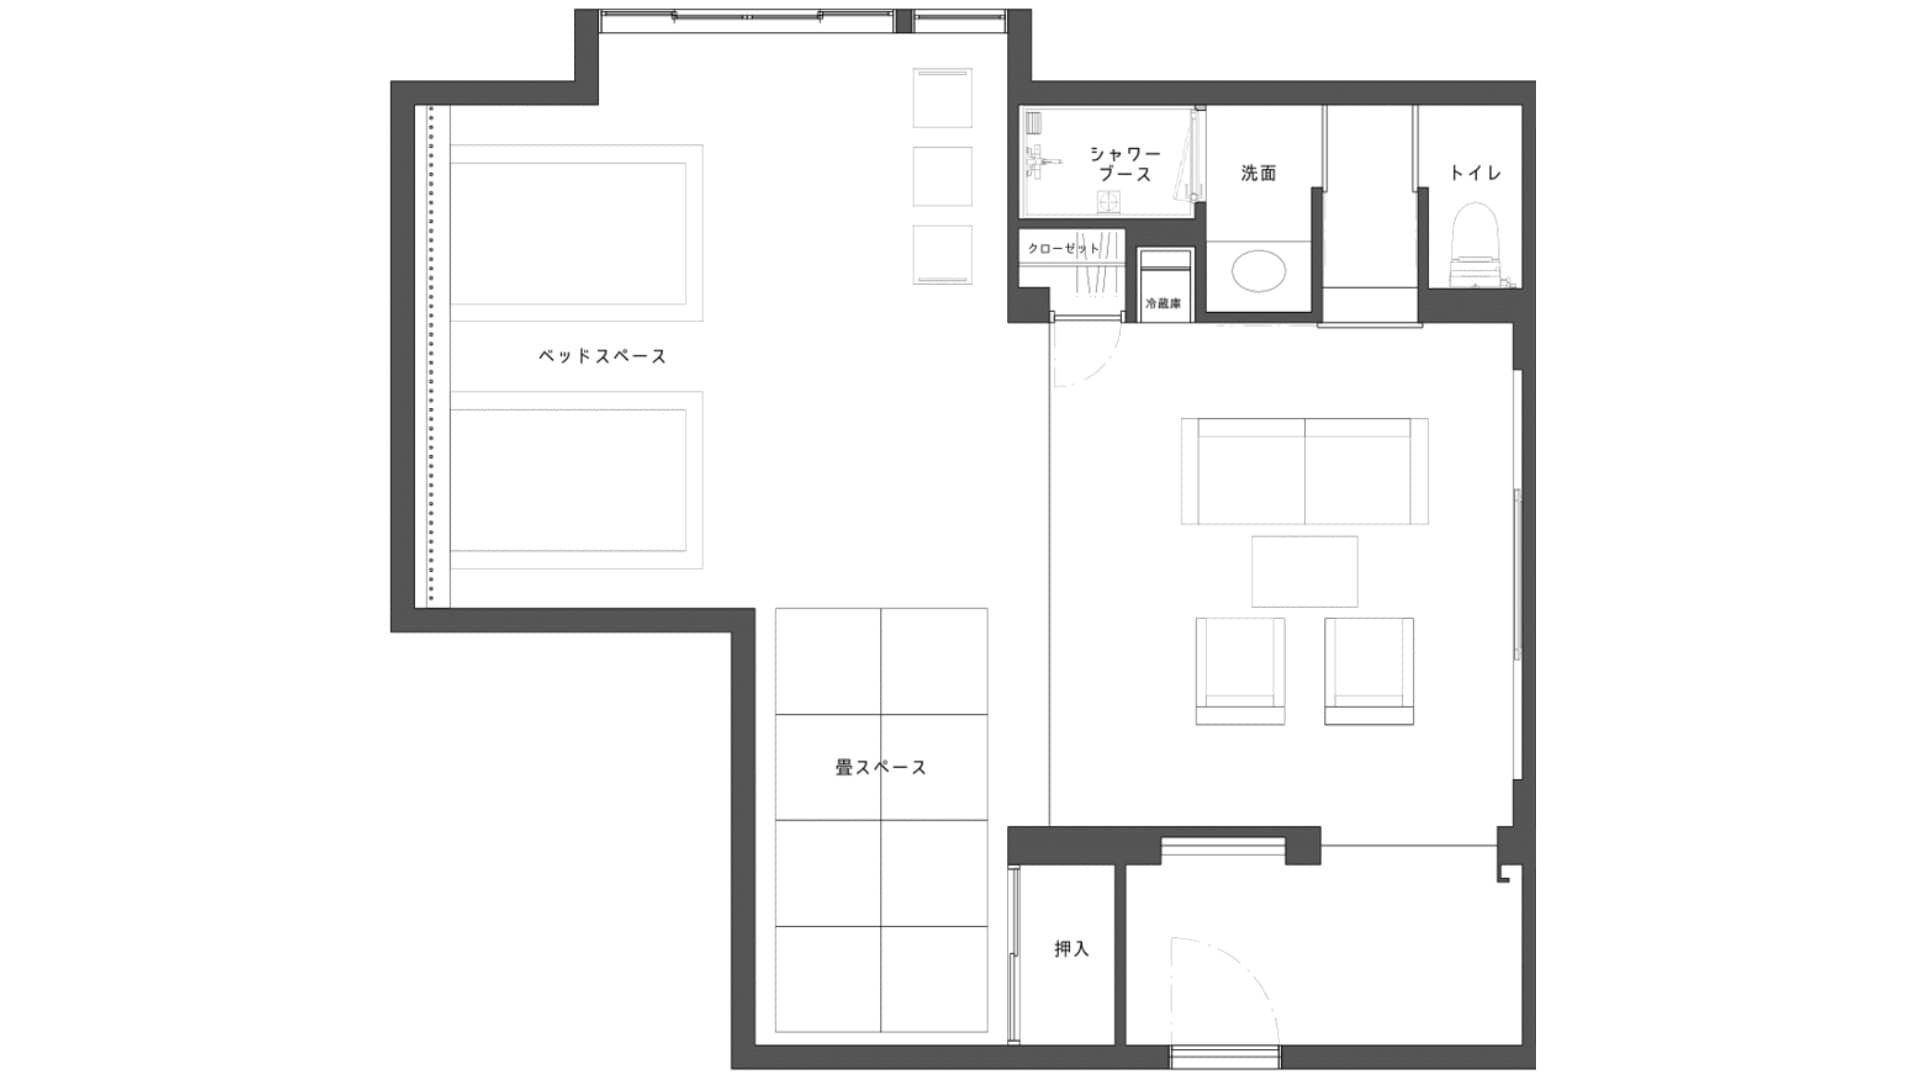 Special room “Ruri” floor plan